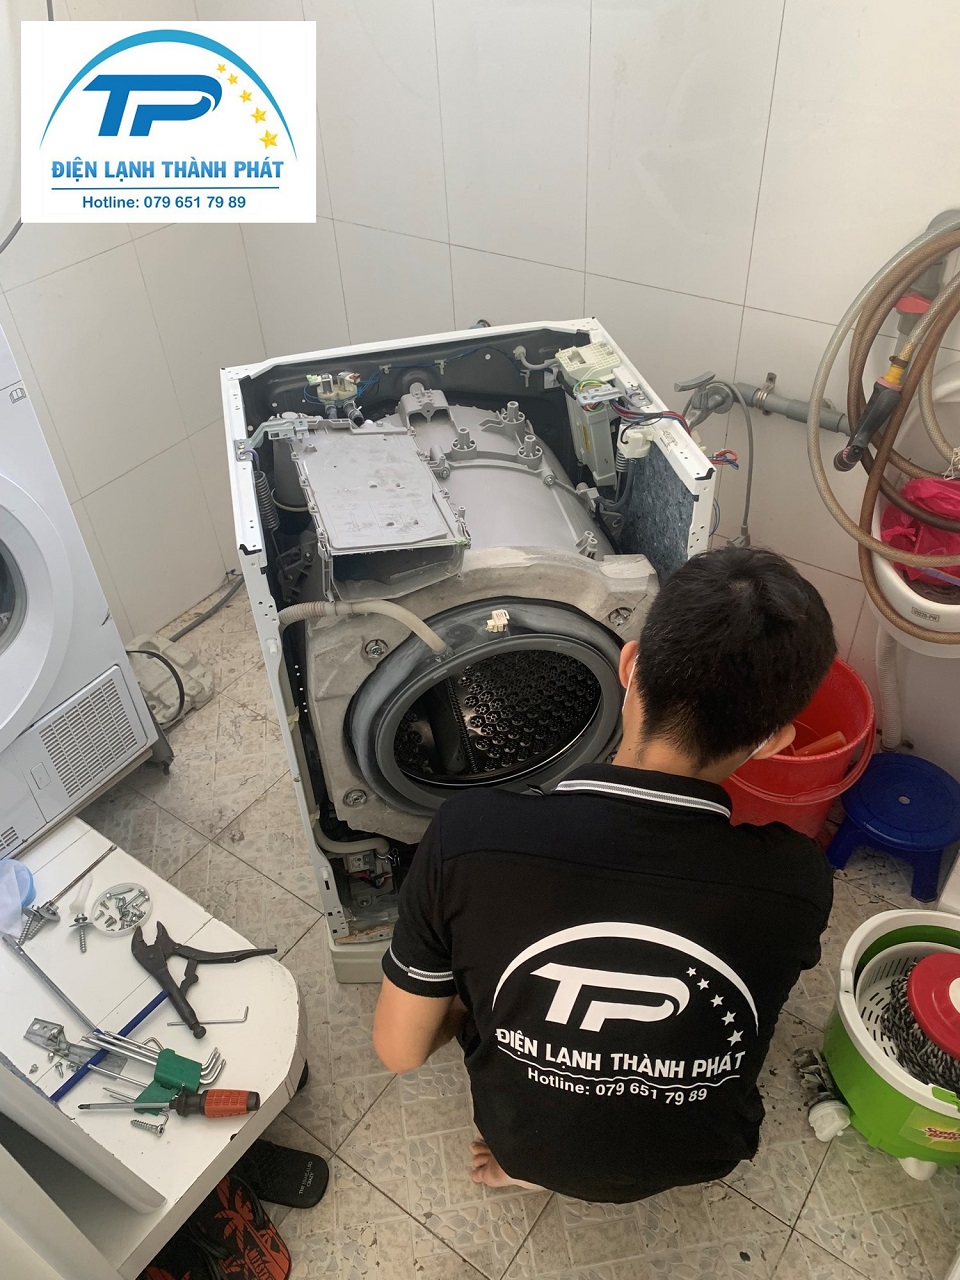 Nhân viên sửa máy giặt Quận 4 thực hiện khắc phục sự cố tại nhà cho khách hàng.